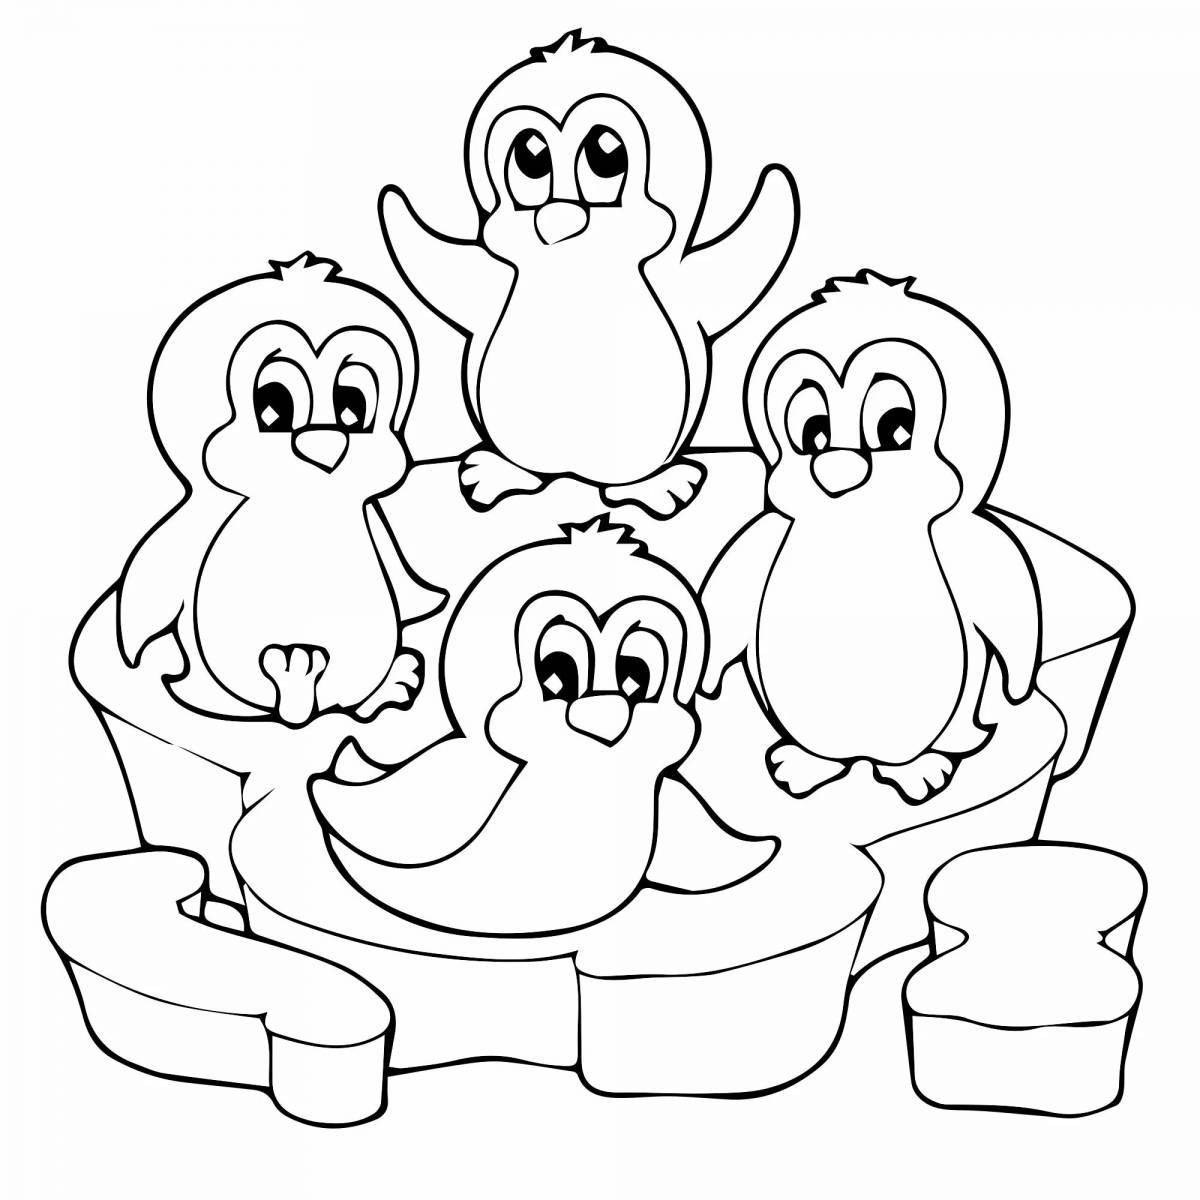 Fun penguin family coloring book